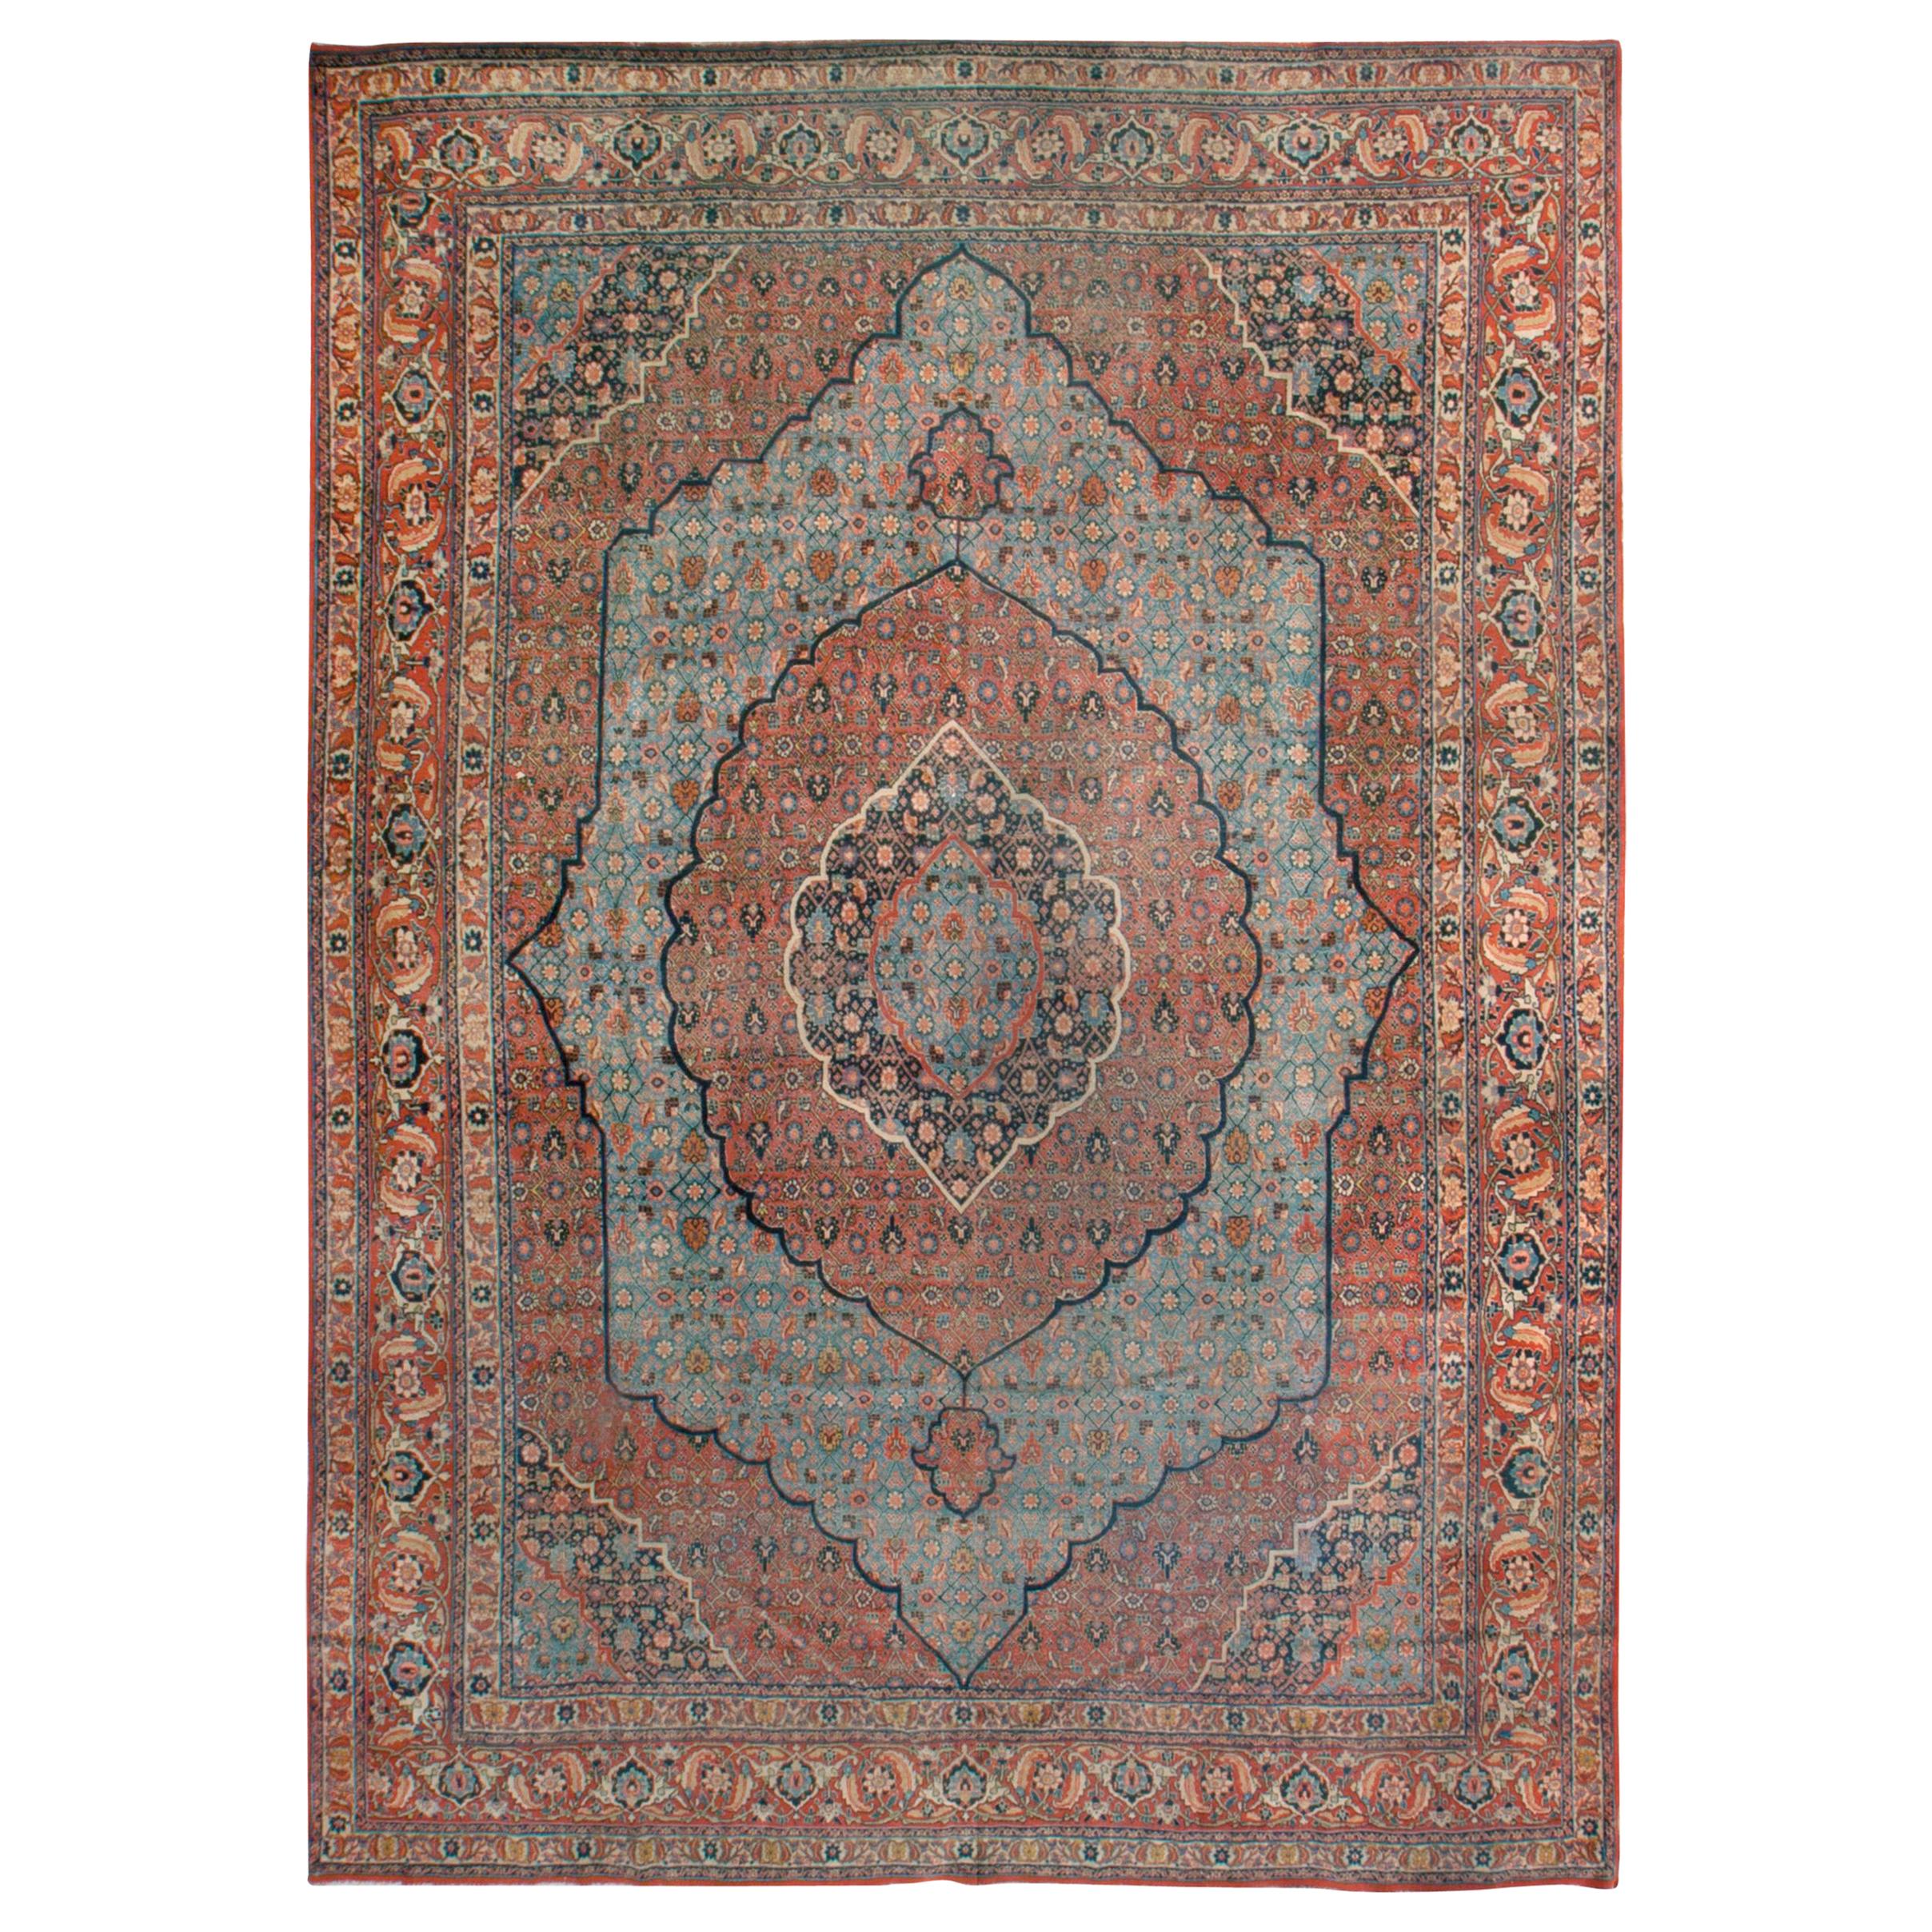 Antique Persian Sky Blue Tabriz Rug, circa 1870, 8'5 x 11'9